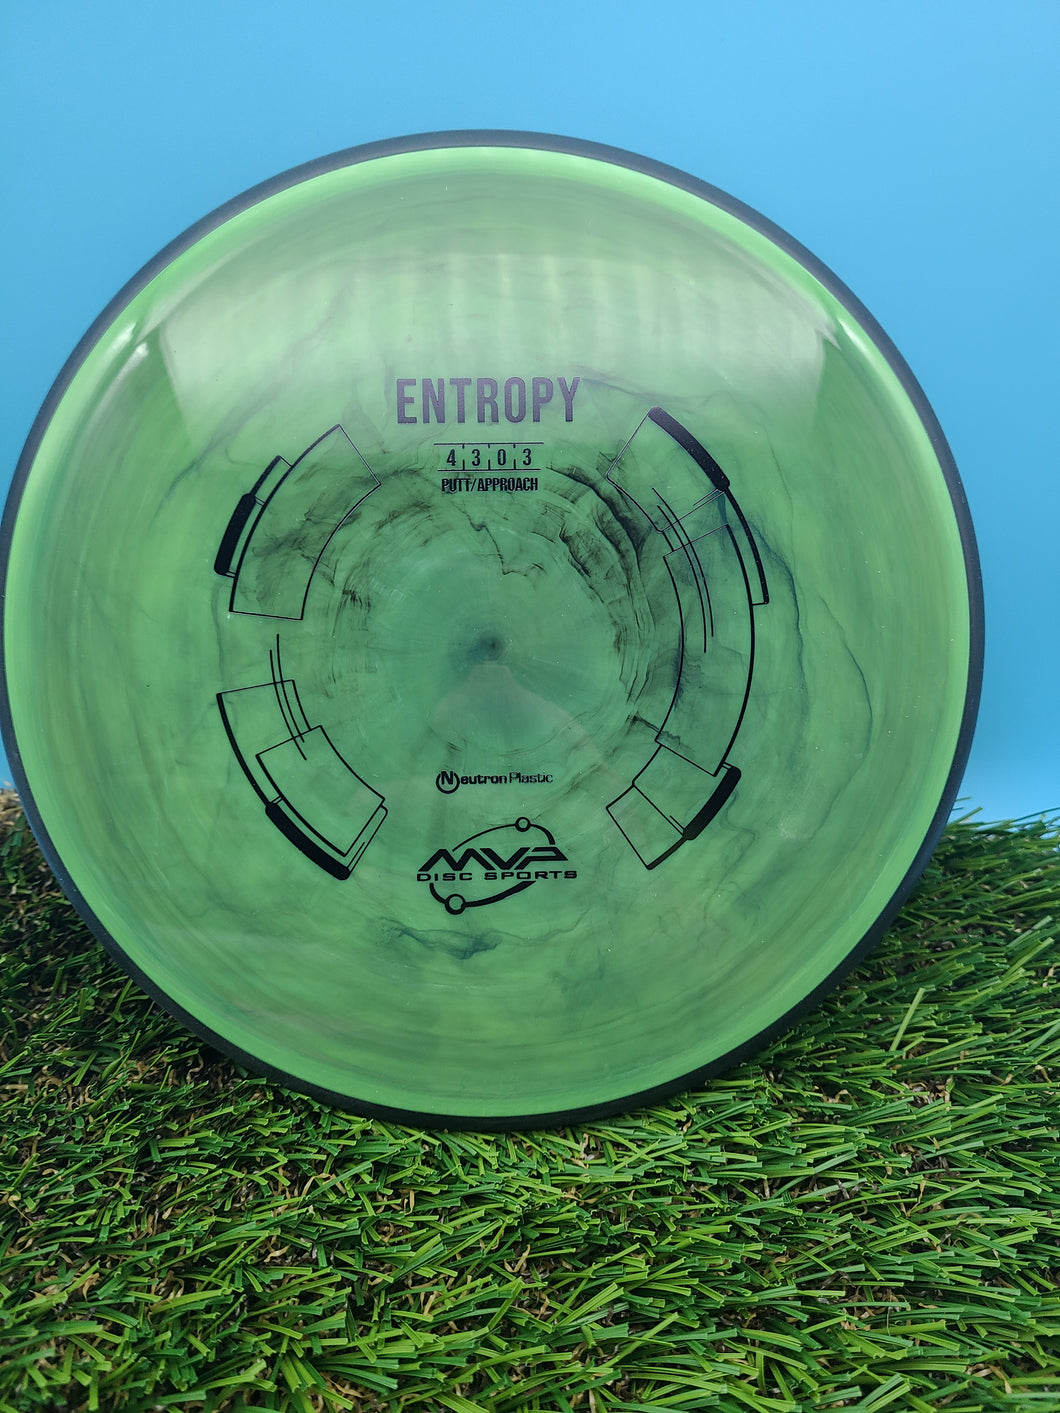 MVP Neutron Plastic Entropy Putter